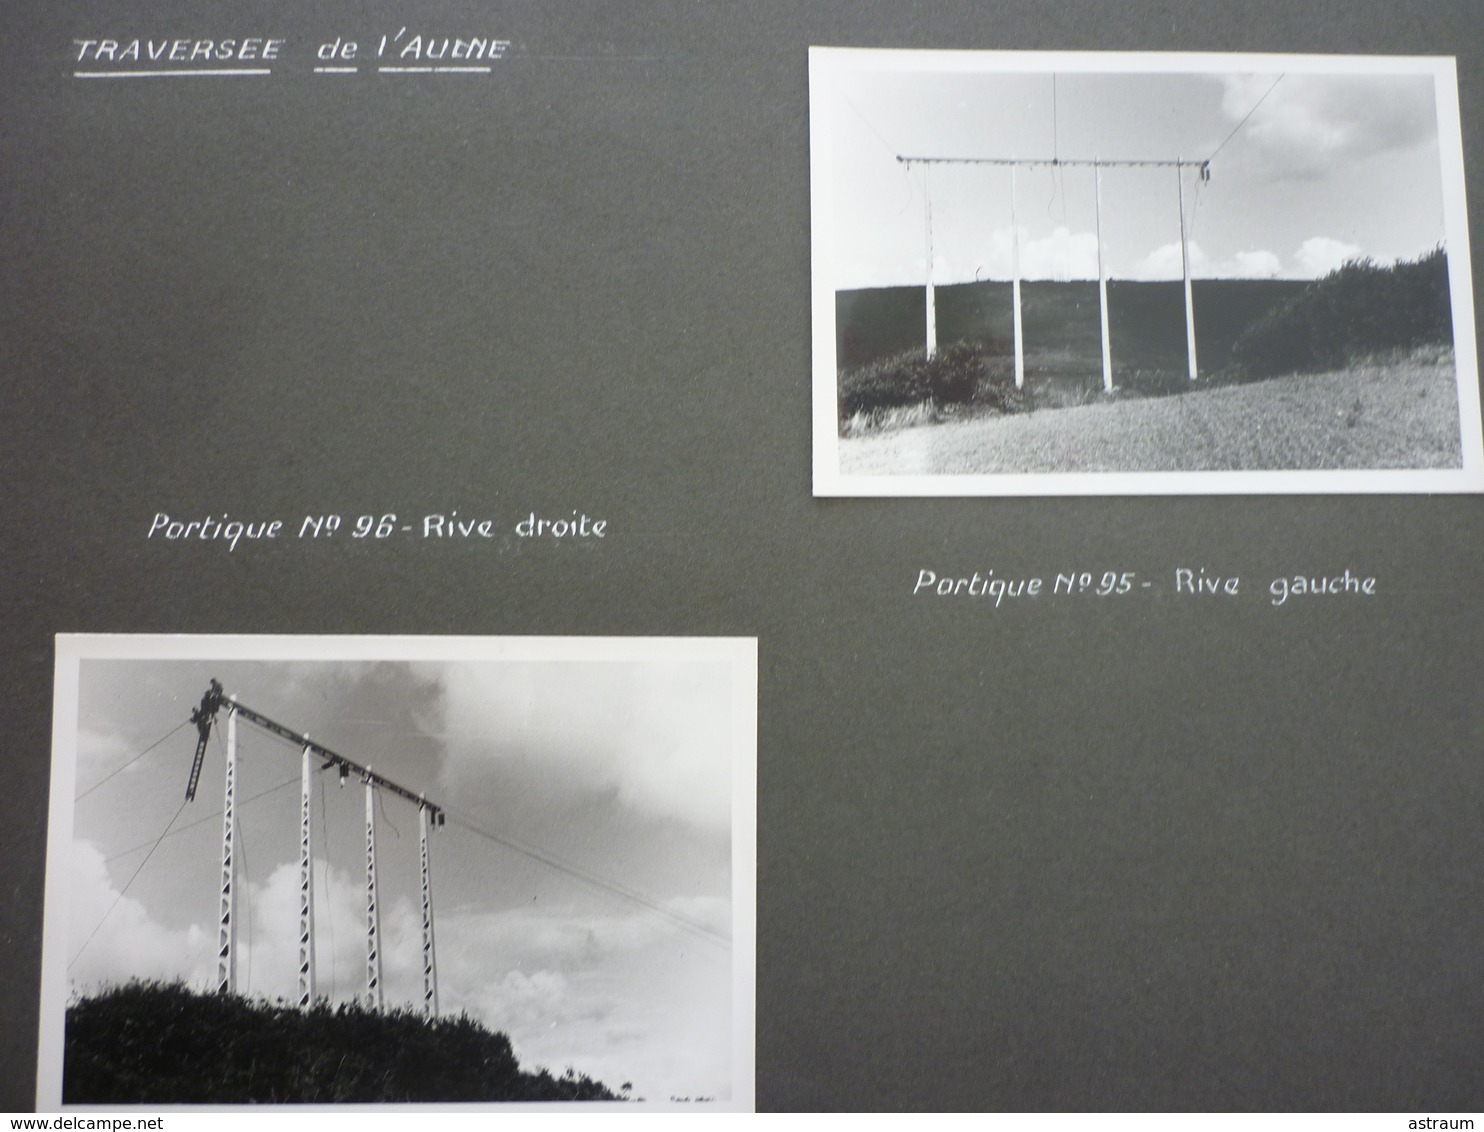 album 80 photos-ligne 63 KW Quimper /Rumengol-troncon Douarnenez-construction d'une ligne electrique en 1951